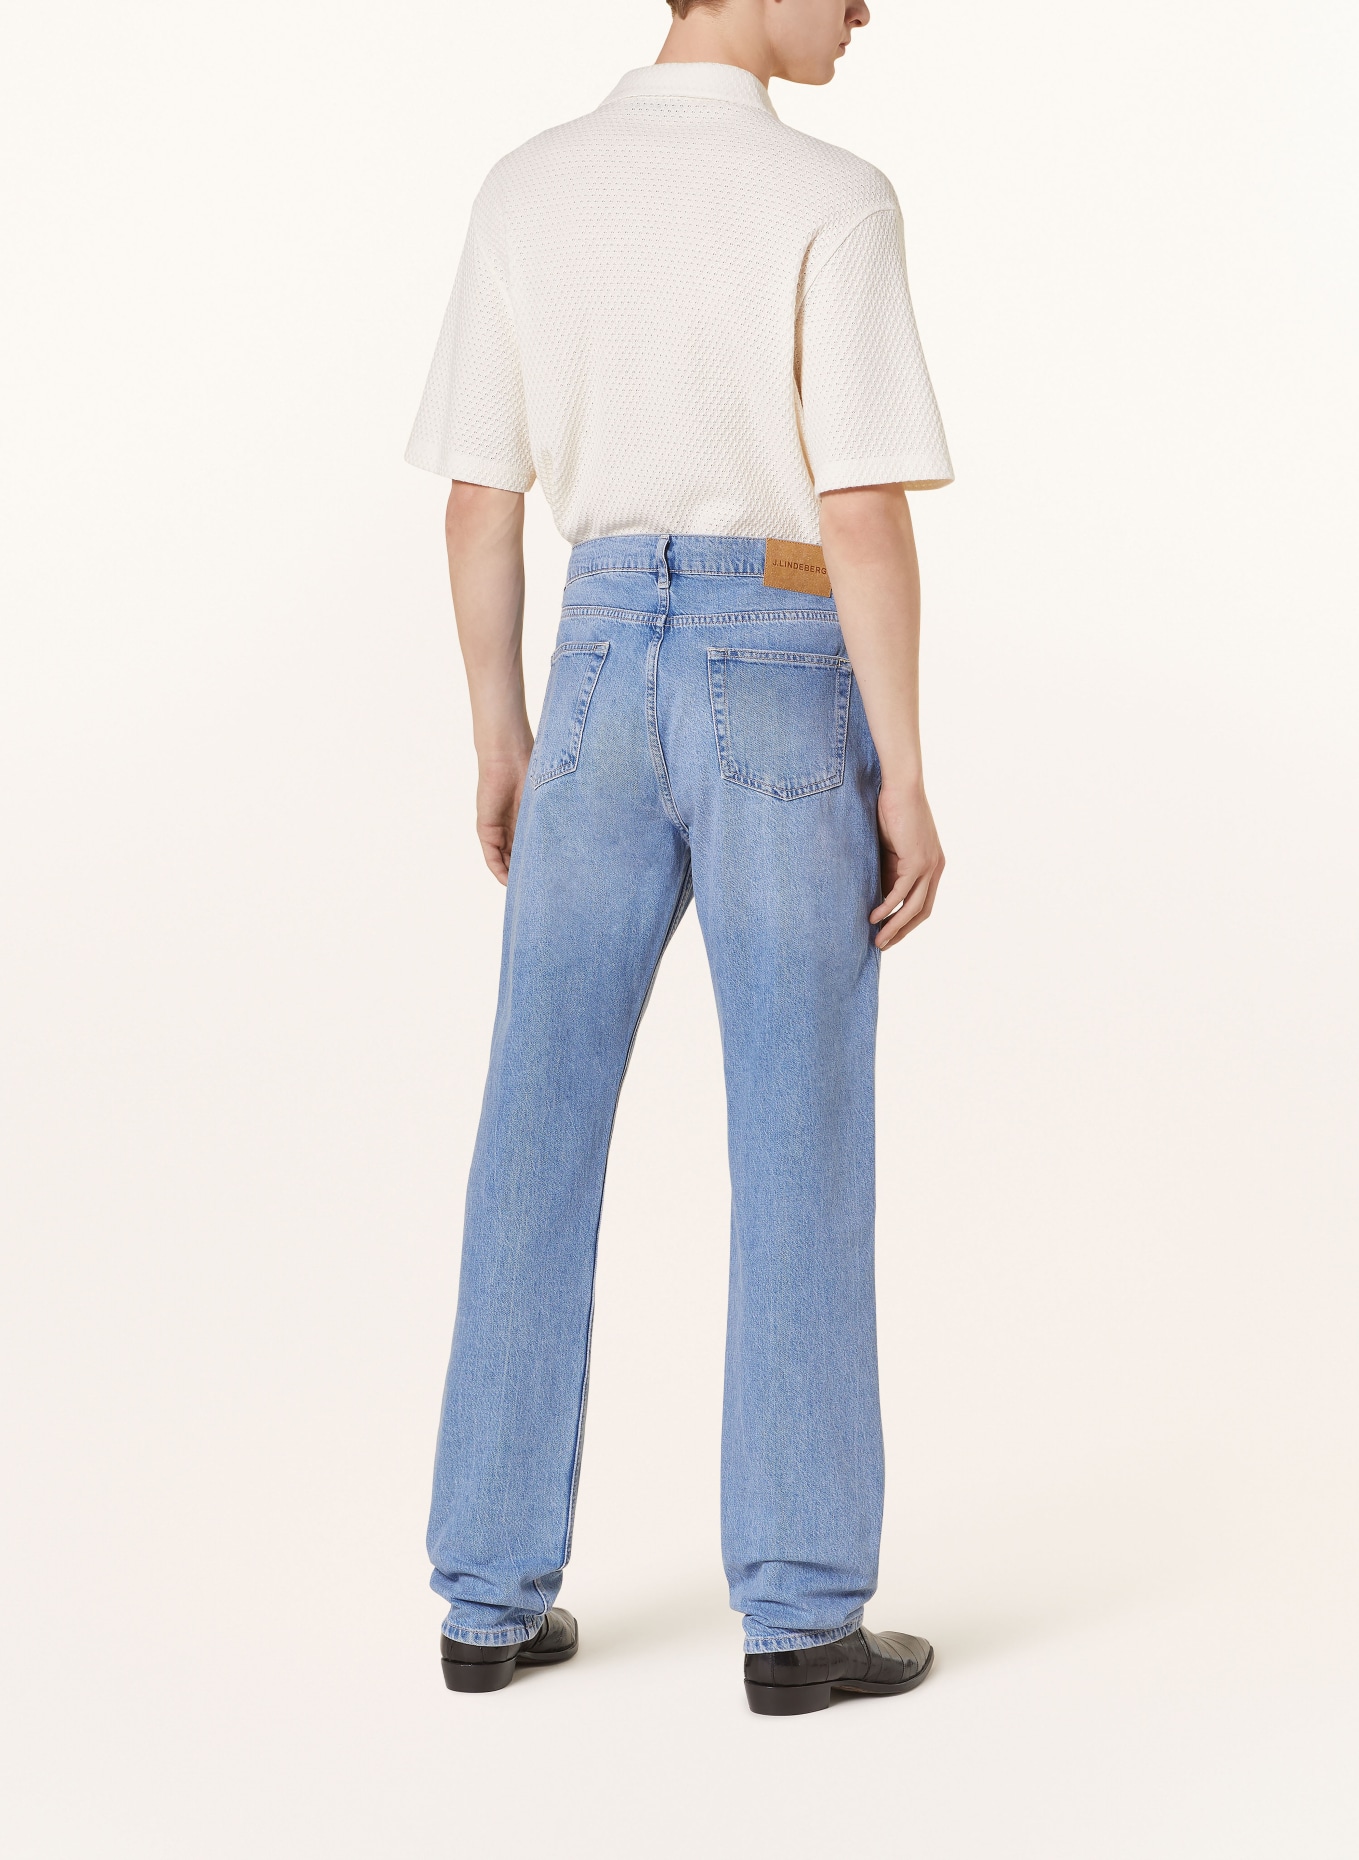 J.LINDEBERG Jeans CODY regular fit, Color: 6428 Light Blue (Image 3)